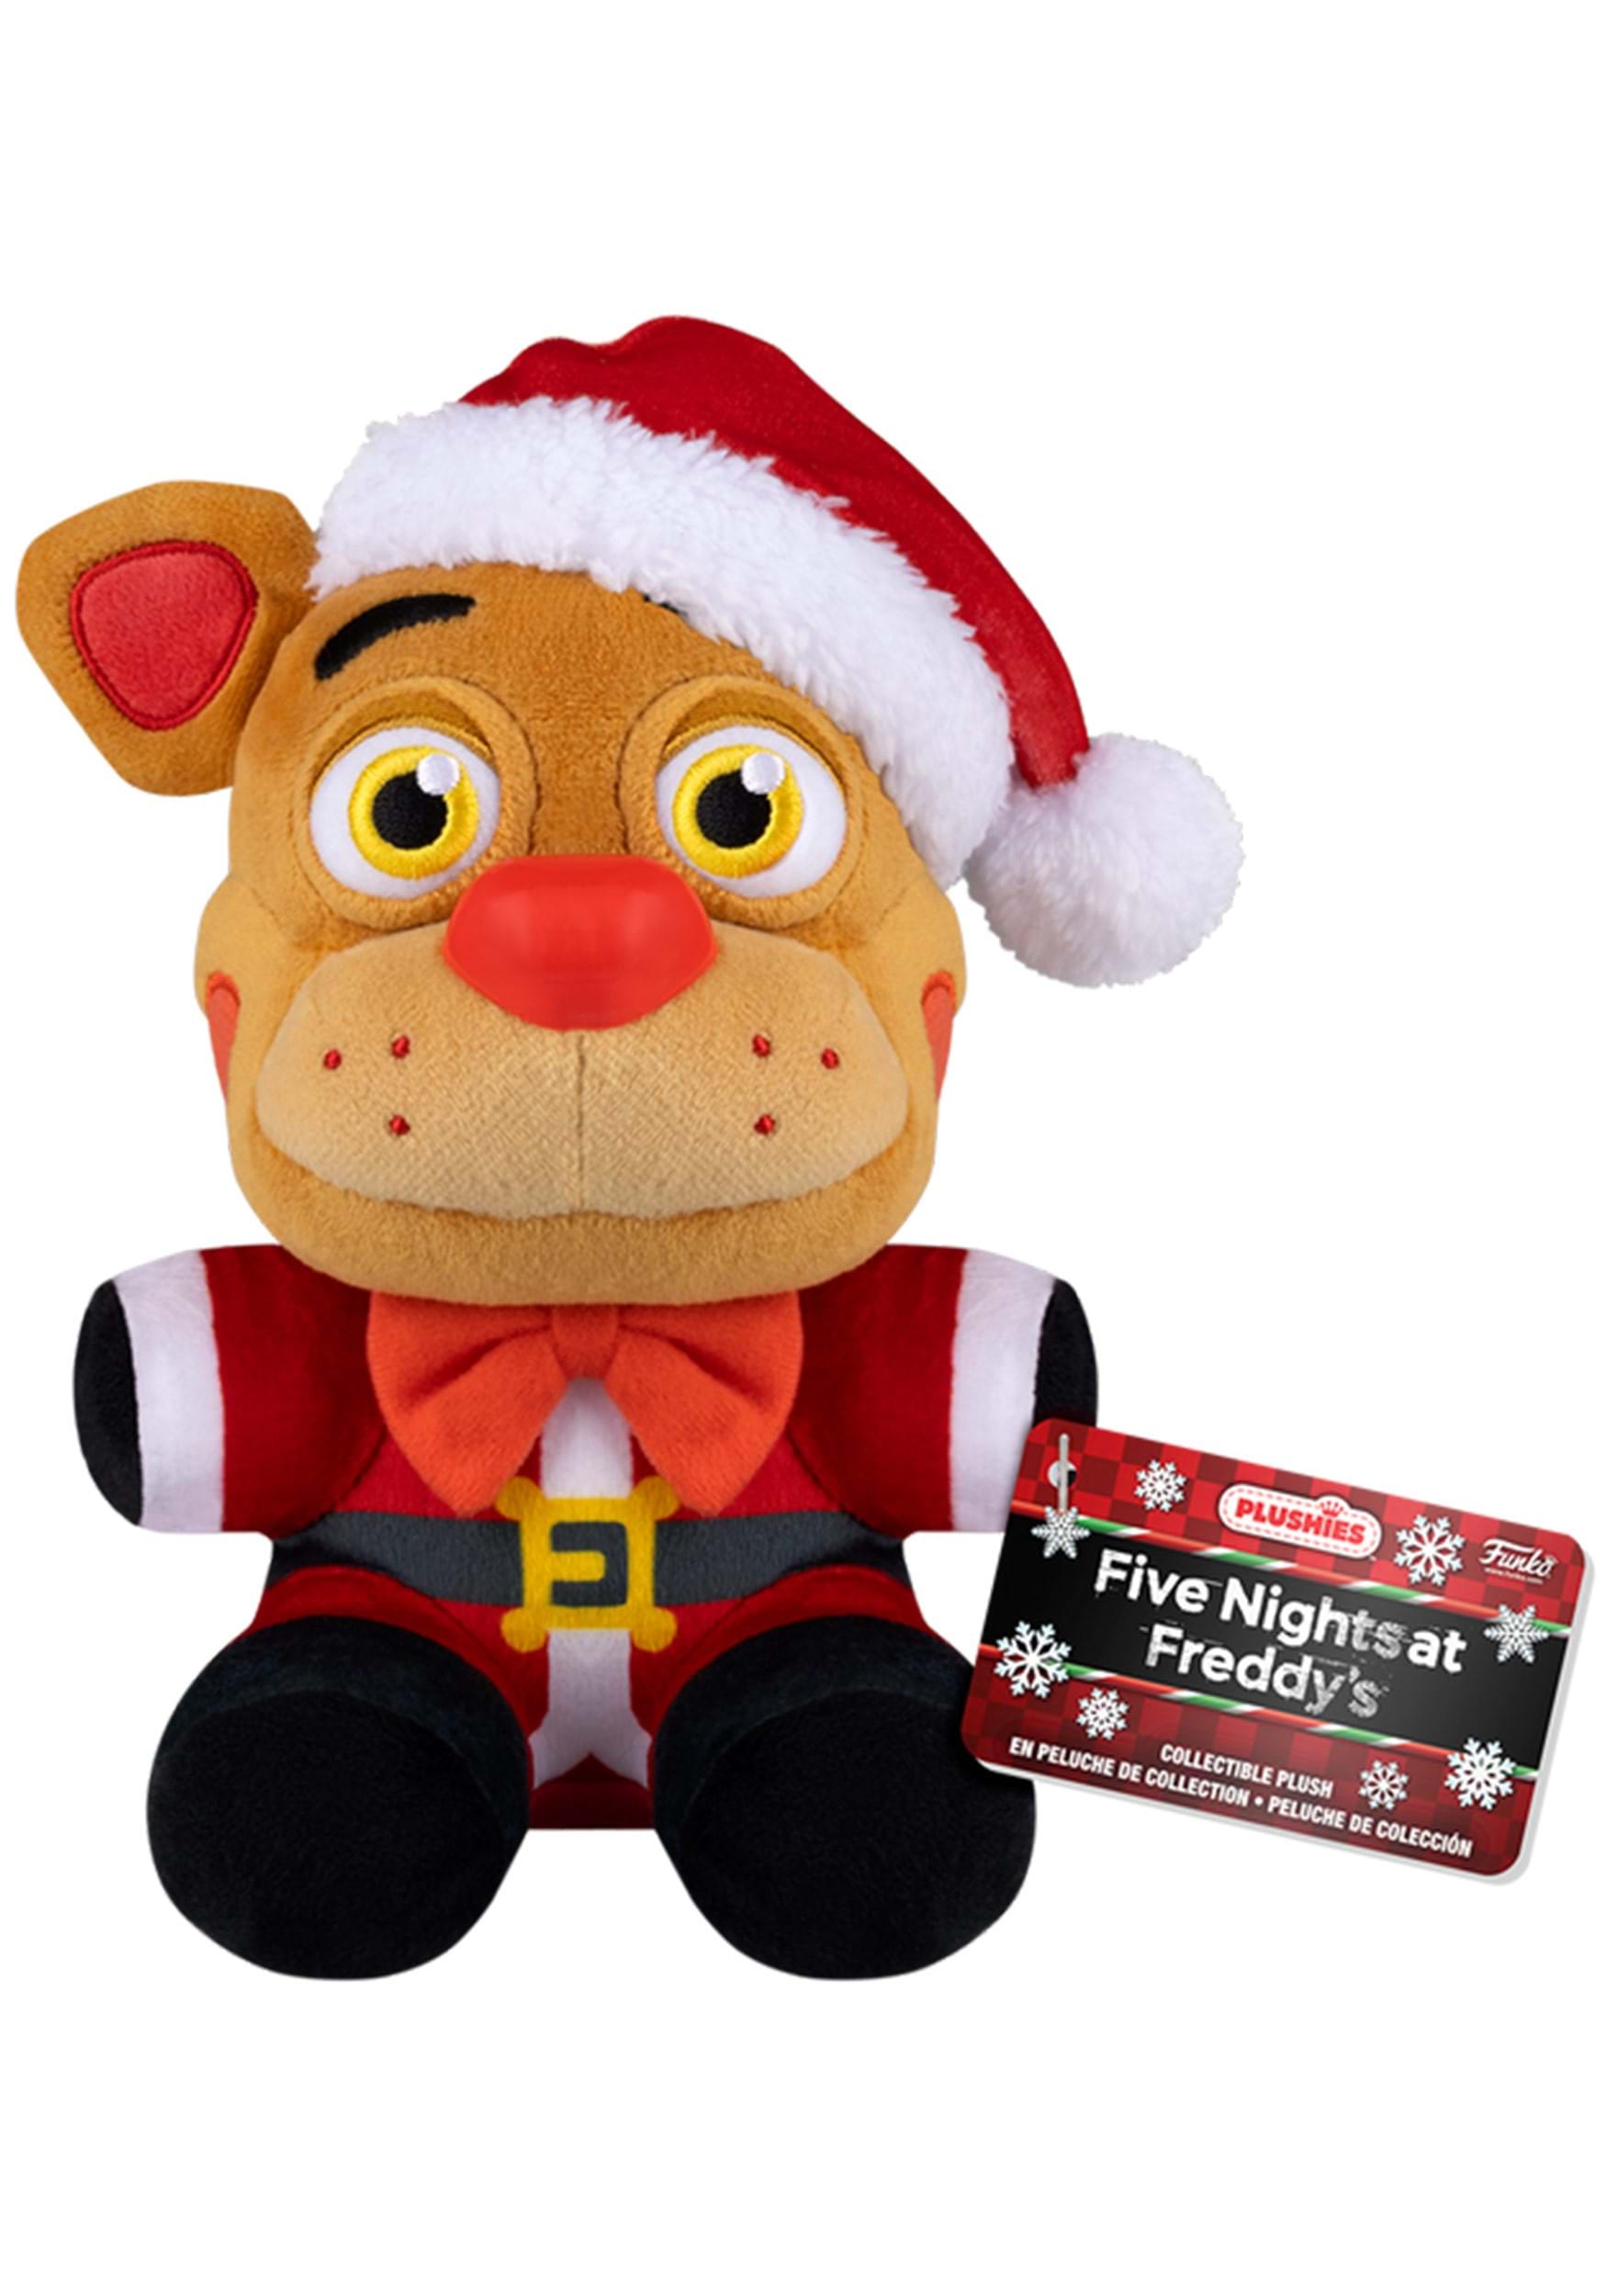 Funko Plush: Five Nights at Freddys - Holiday Freddy 7-Inch Plush